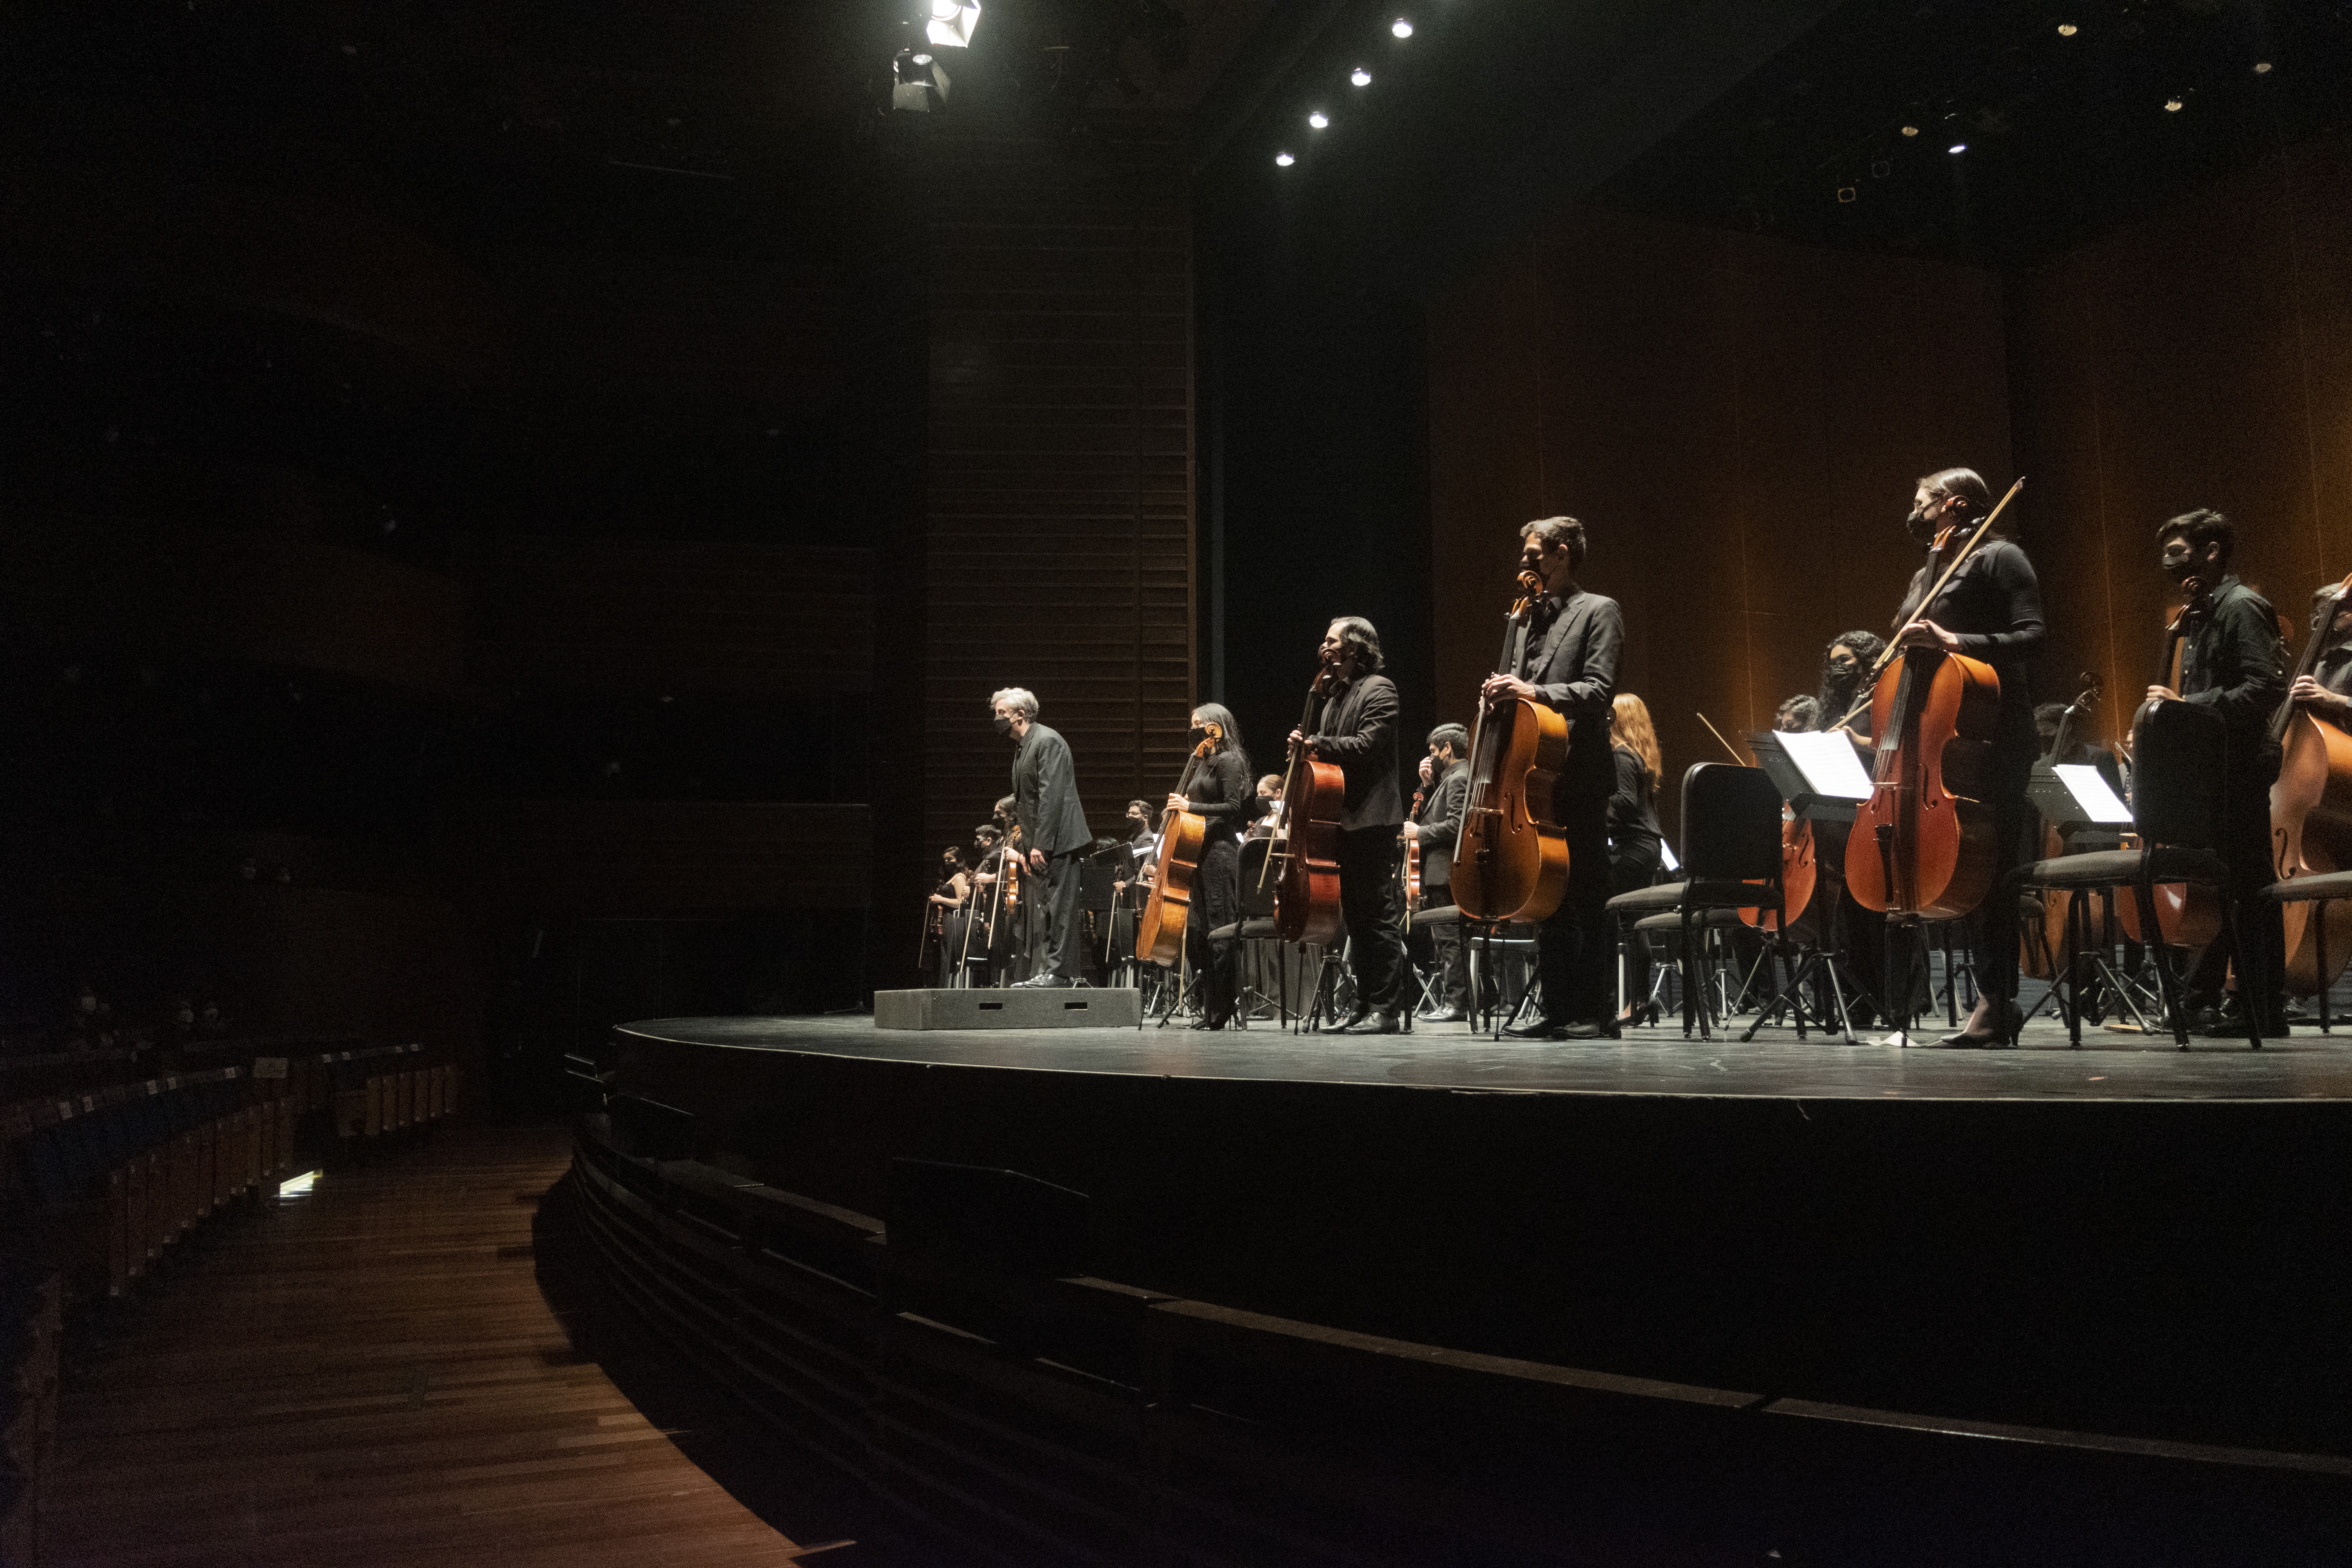 Orquesta Sinfónica Nacional Juvenil Bicentenario presenta concierto dedicado a Wagner & Strauss